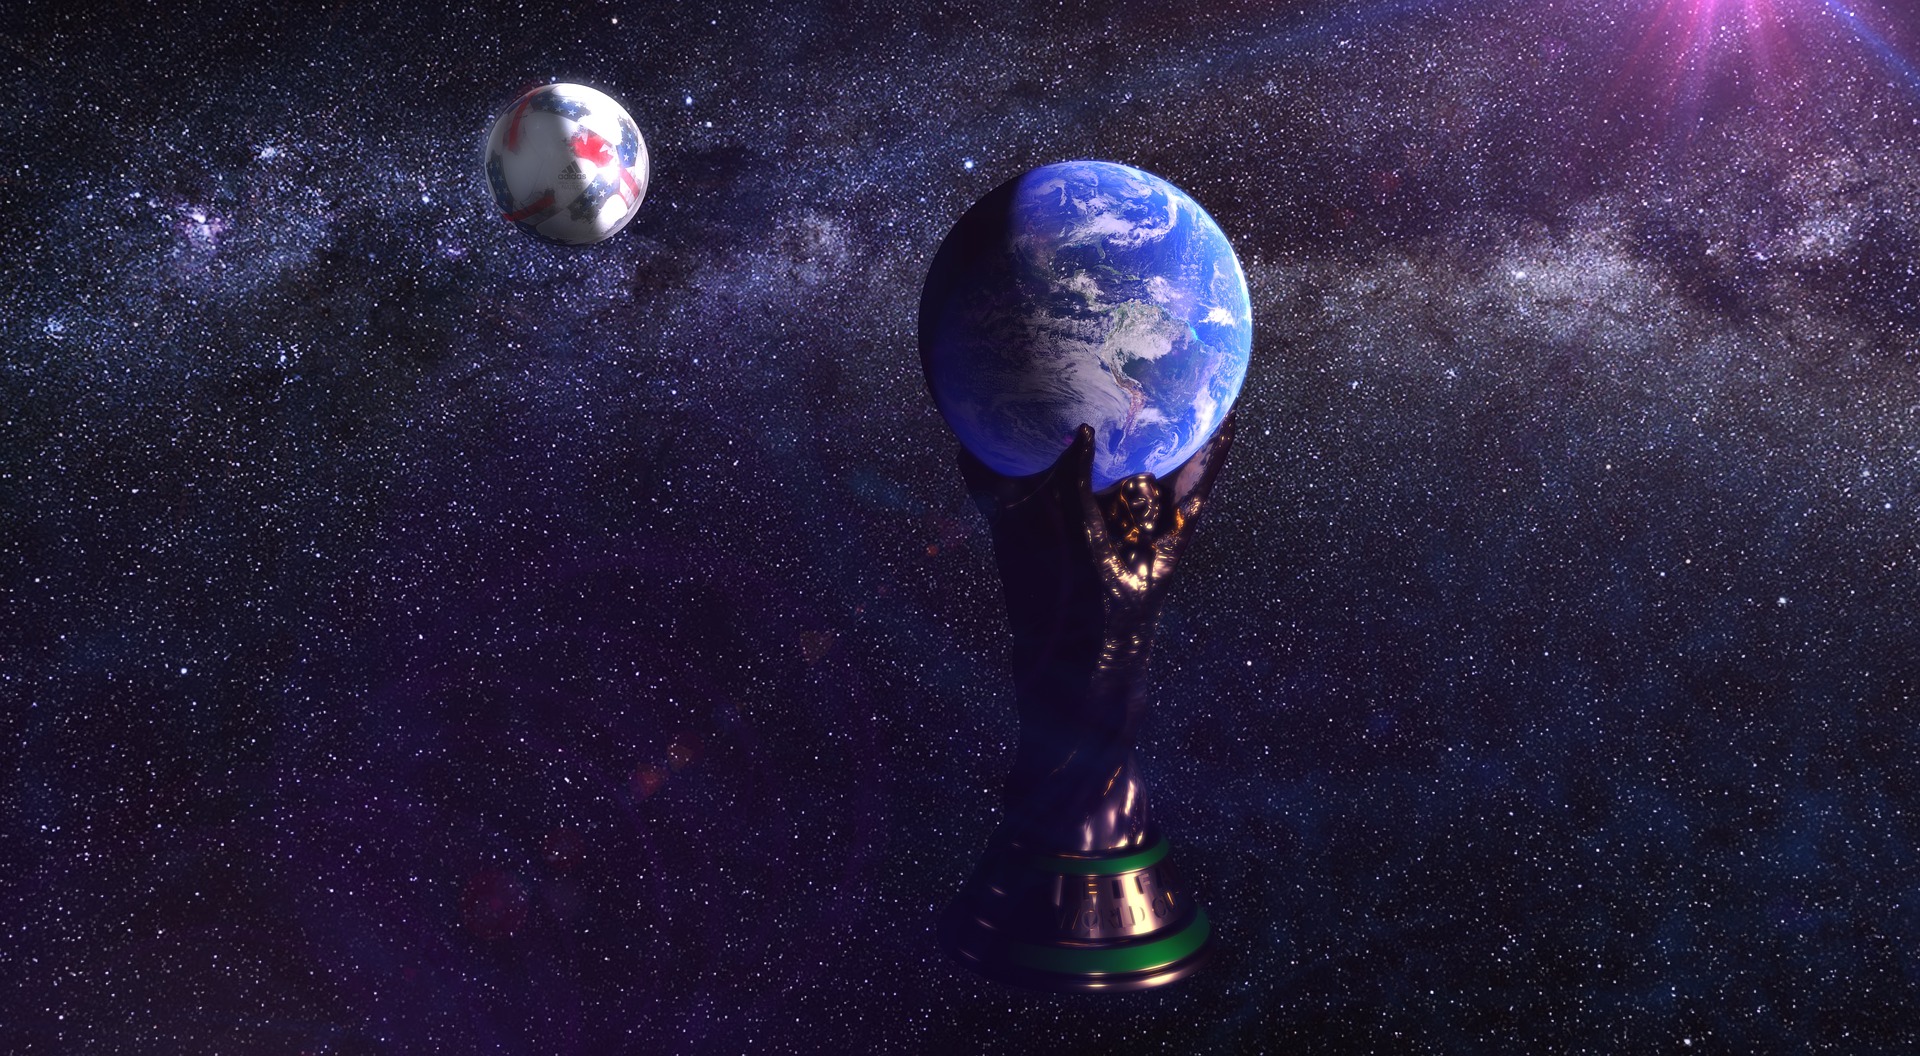 Verdens mesterskab - Om VM i fodbold historie og fremtid